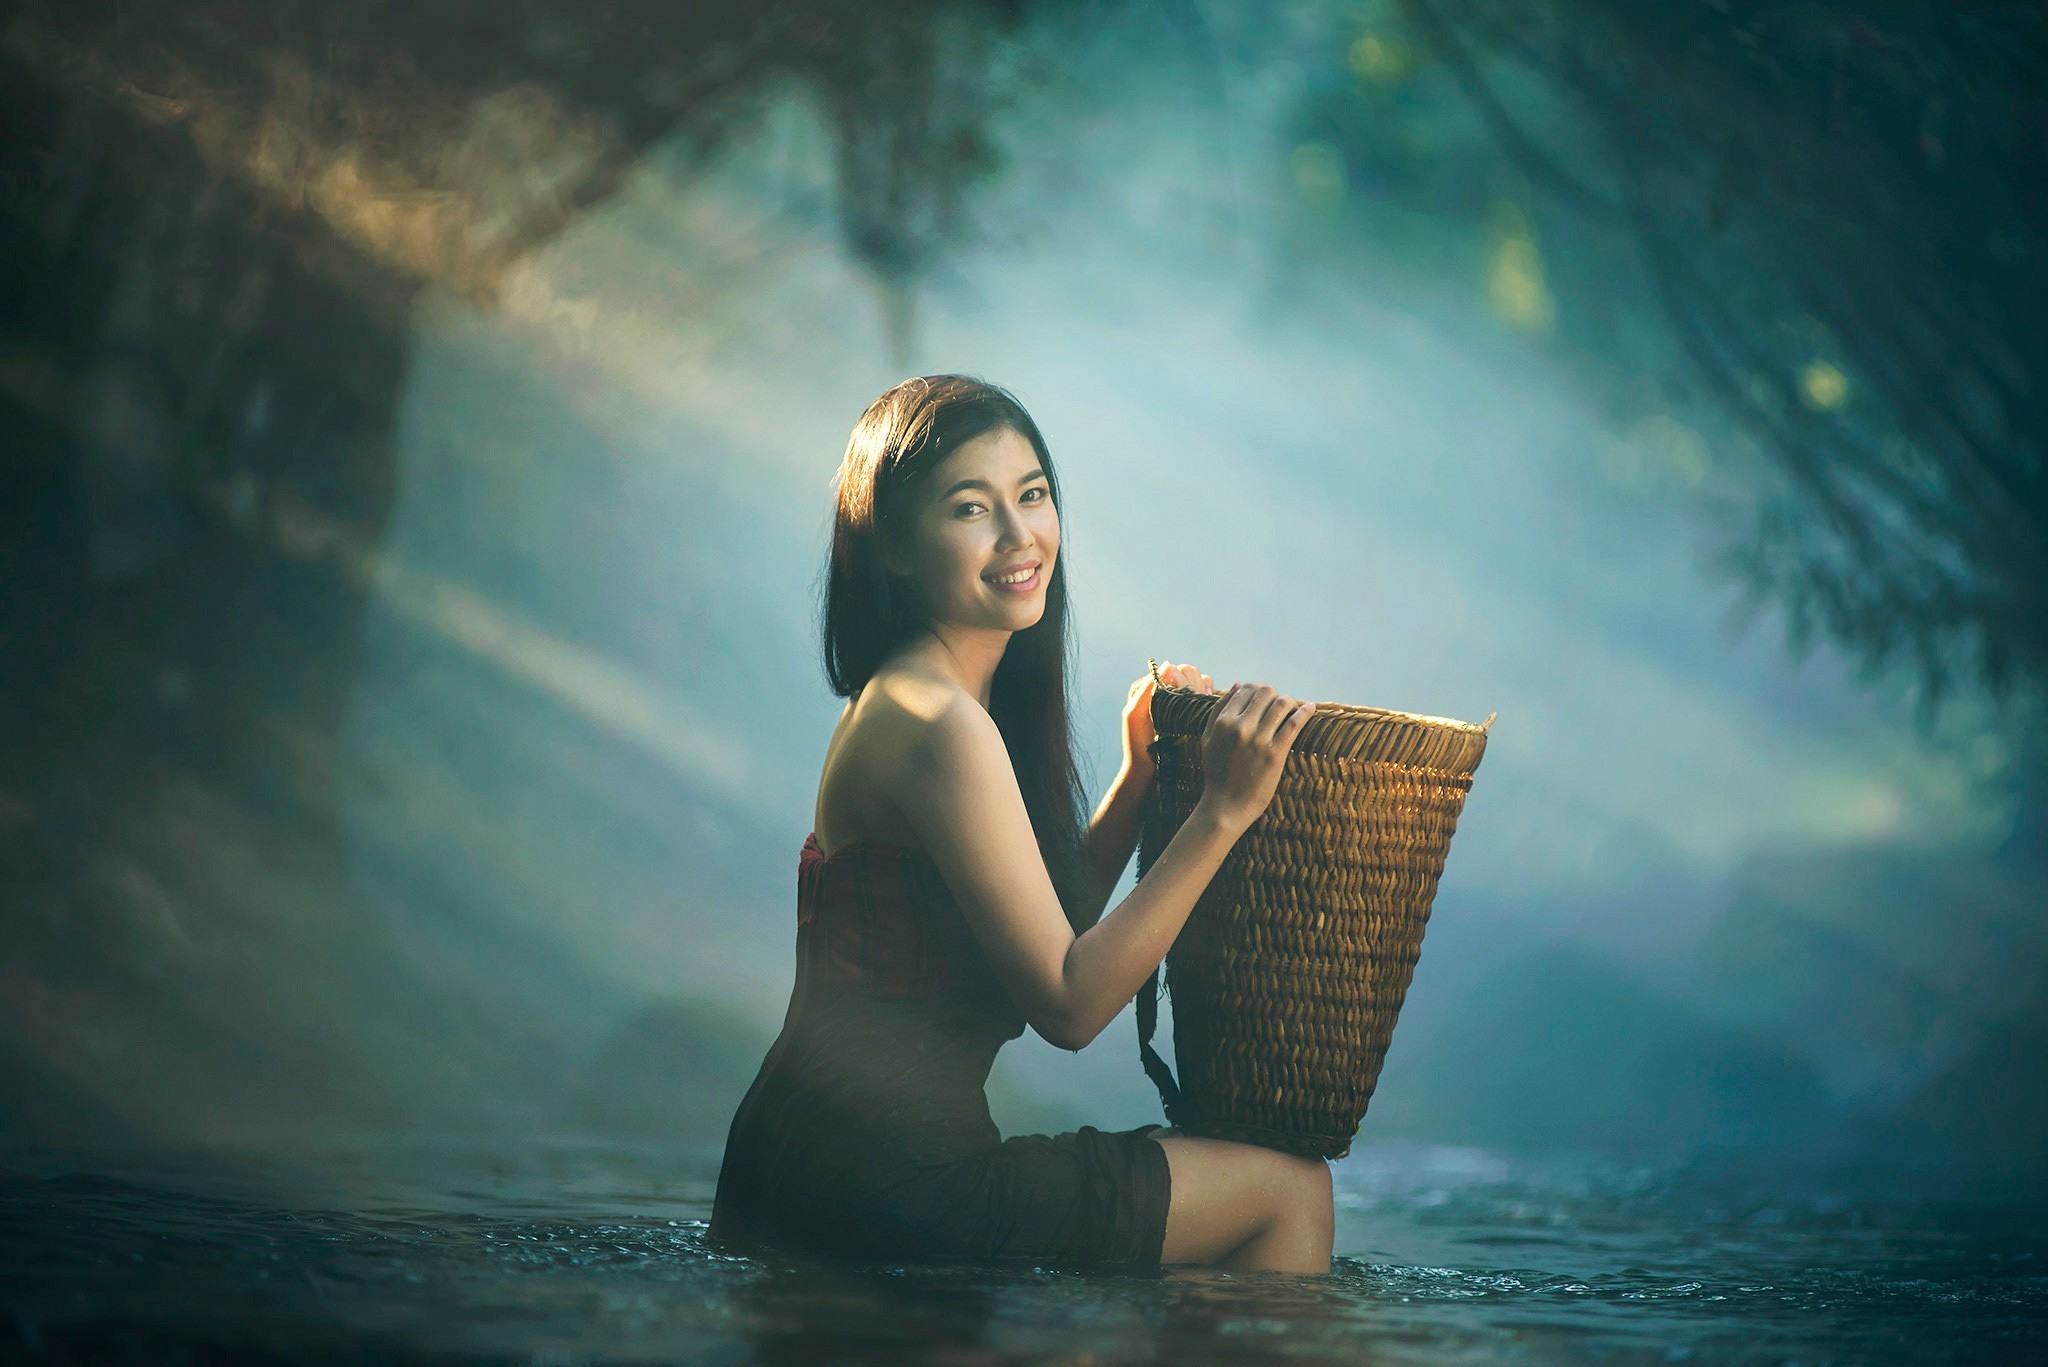 Asian Model In Water - HD Wallpaper 